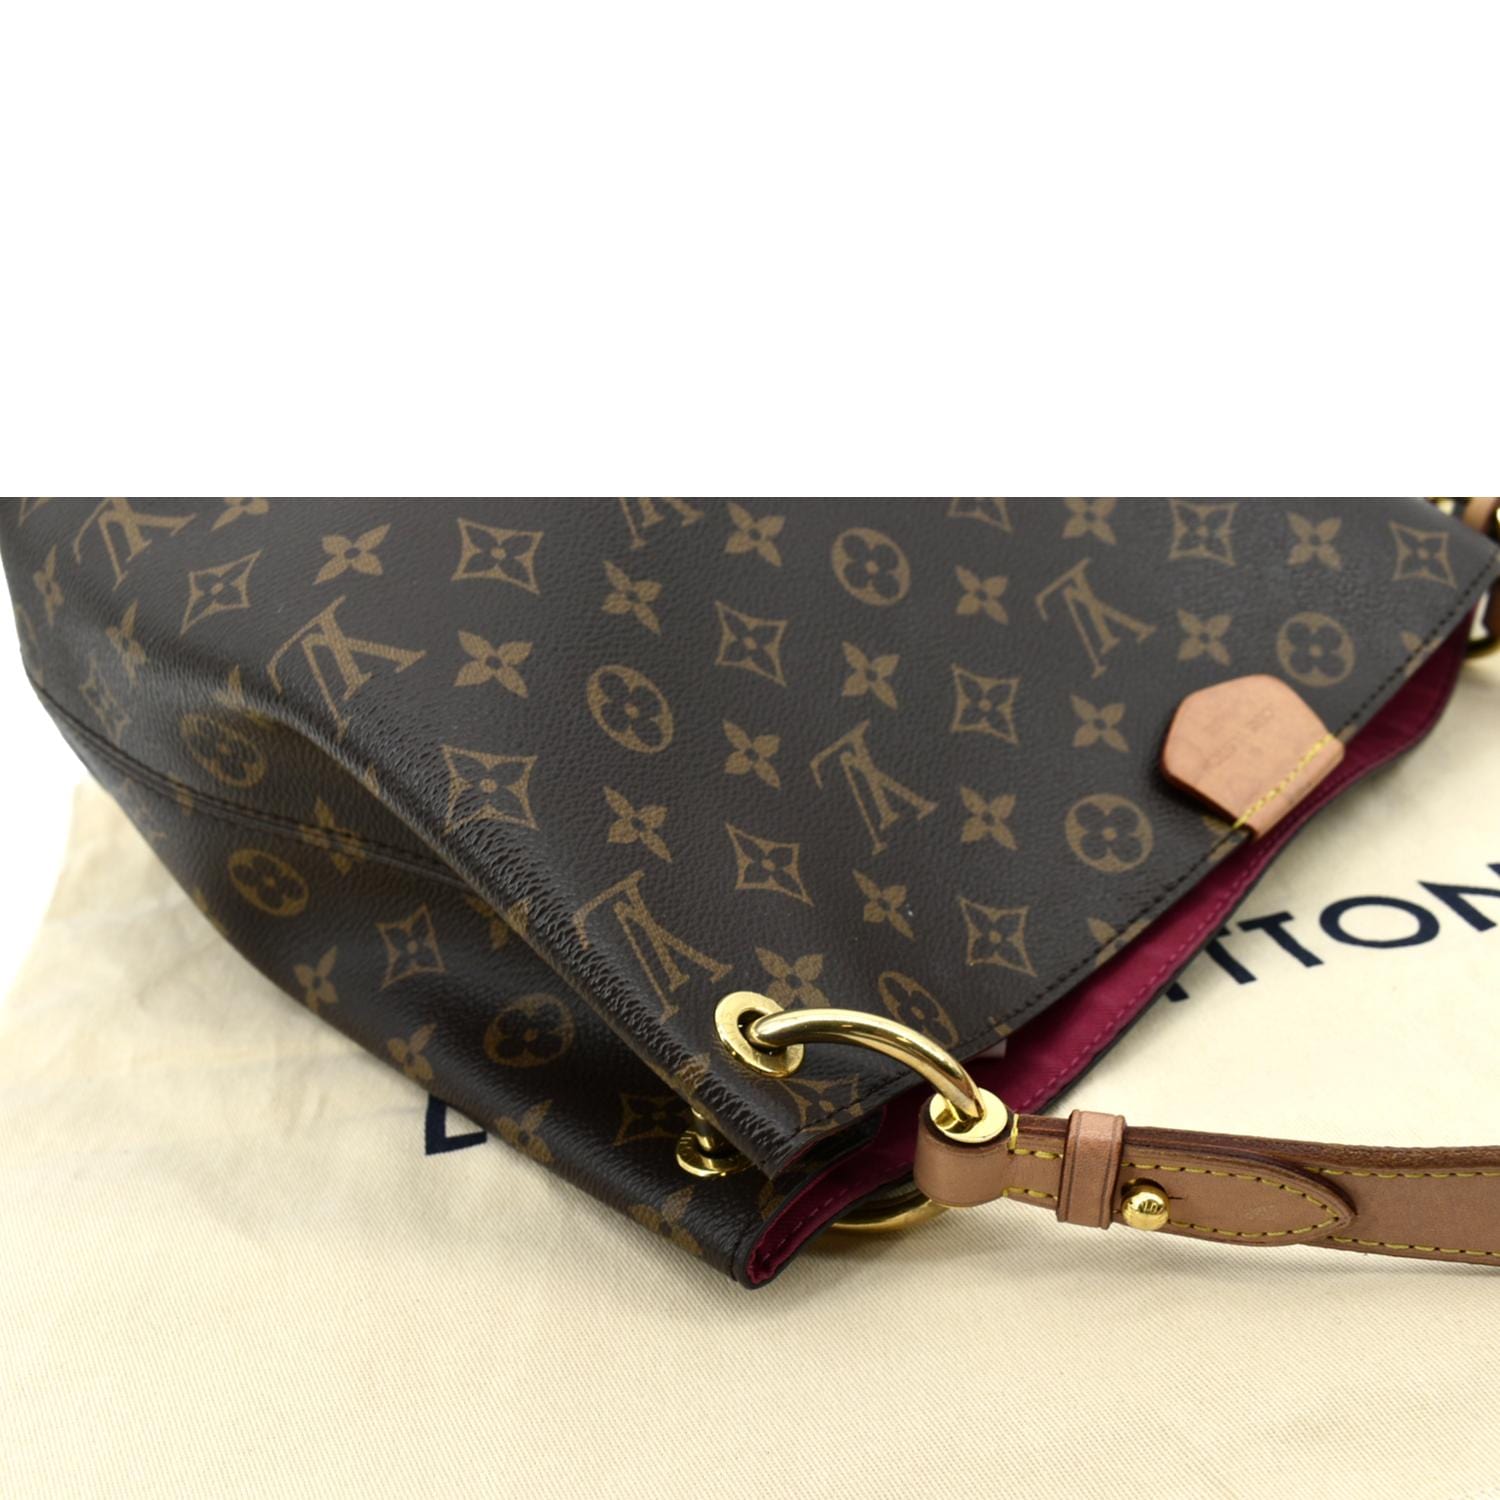 Louis Vuitton, Bags, Sold Louis Vuitton Graceful Pm